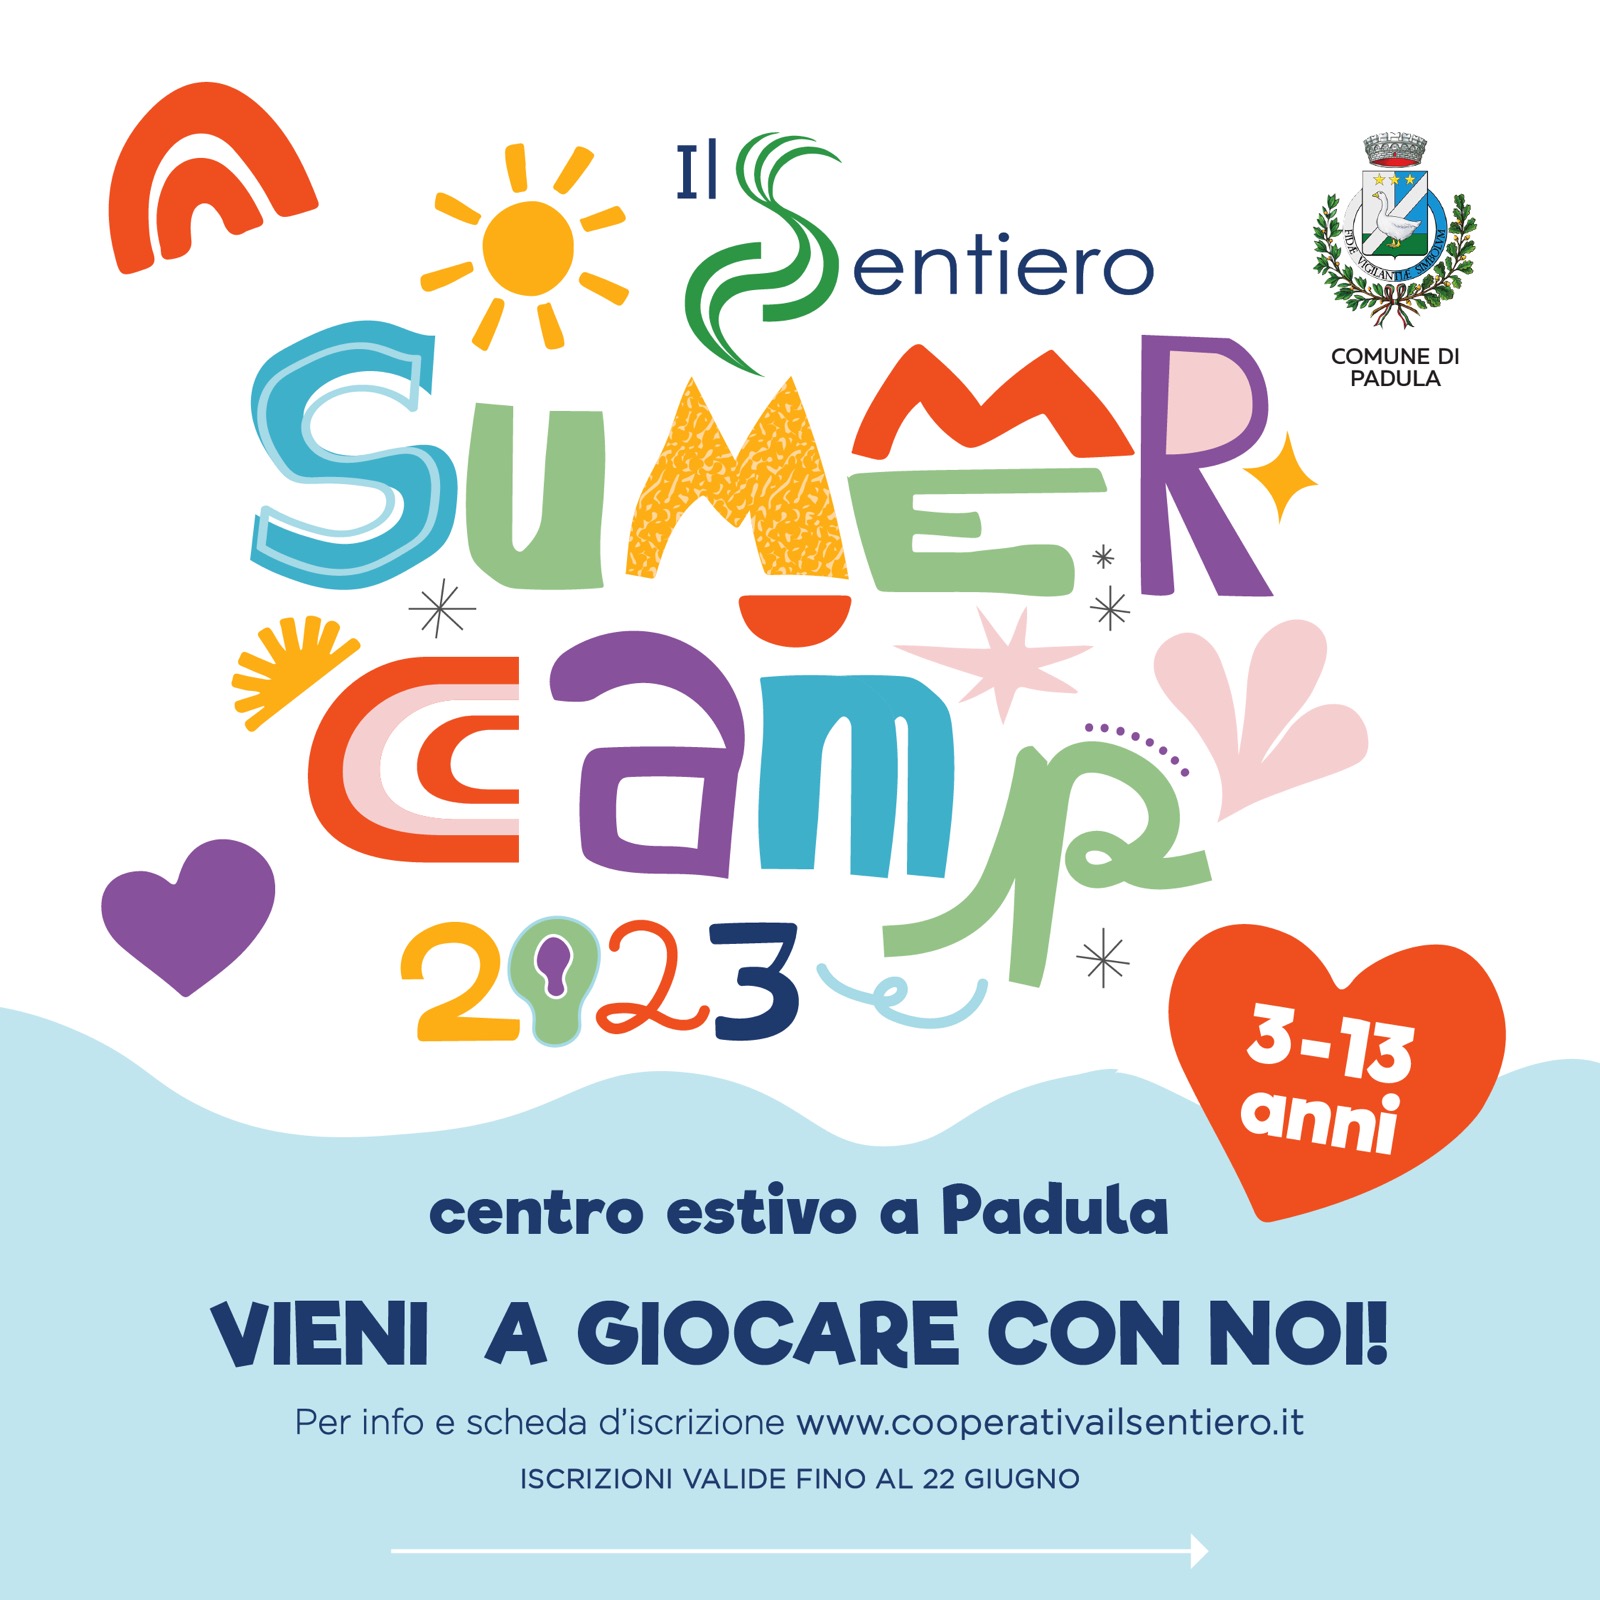 Il Sentiero Summer Camp Padula: Centro Estivo Gratuito per Bambini/e e Ragazzi dai 3 ai 13 anni